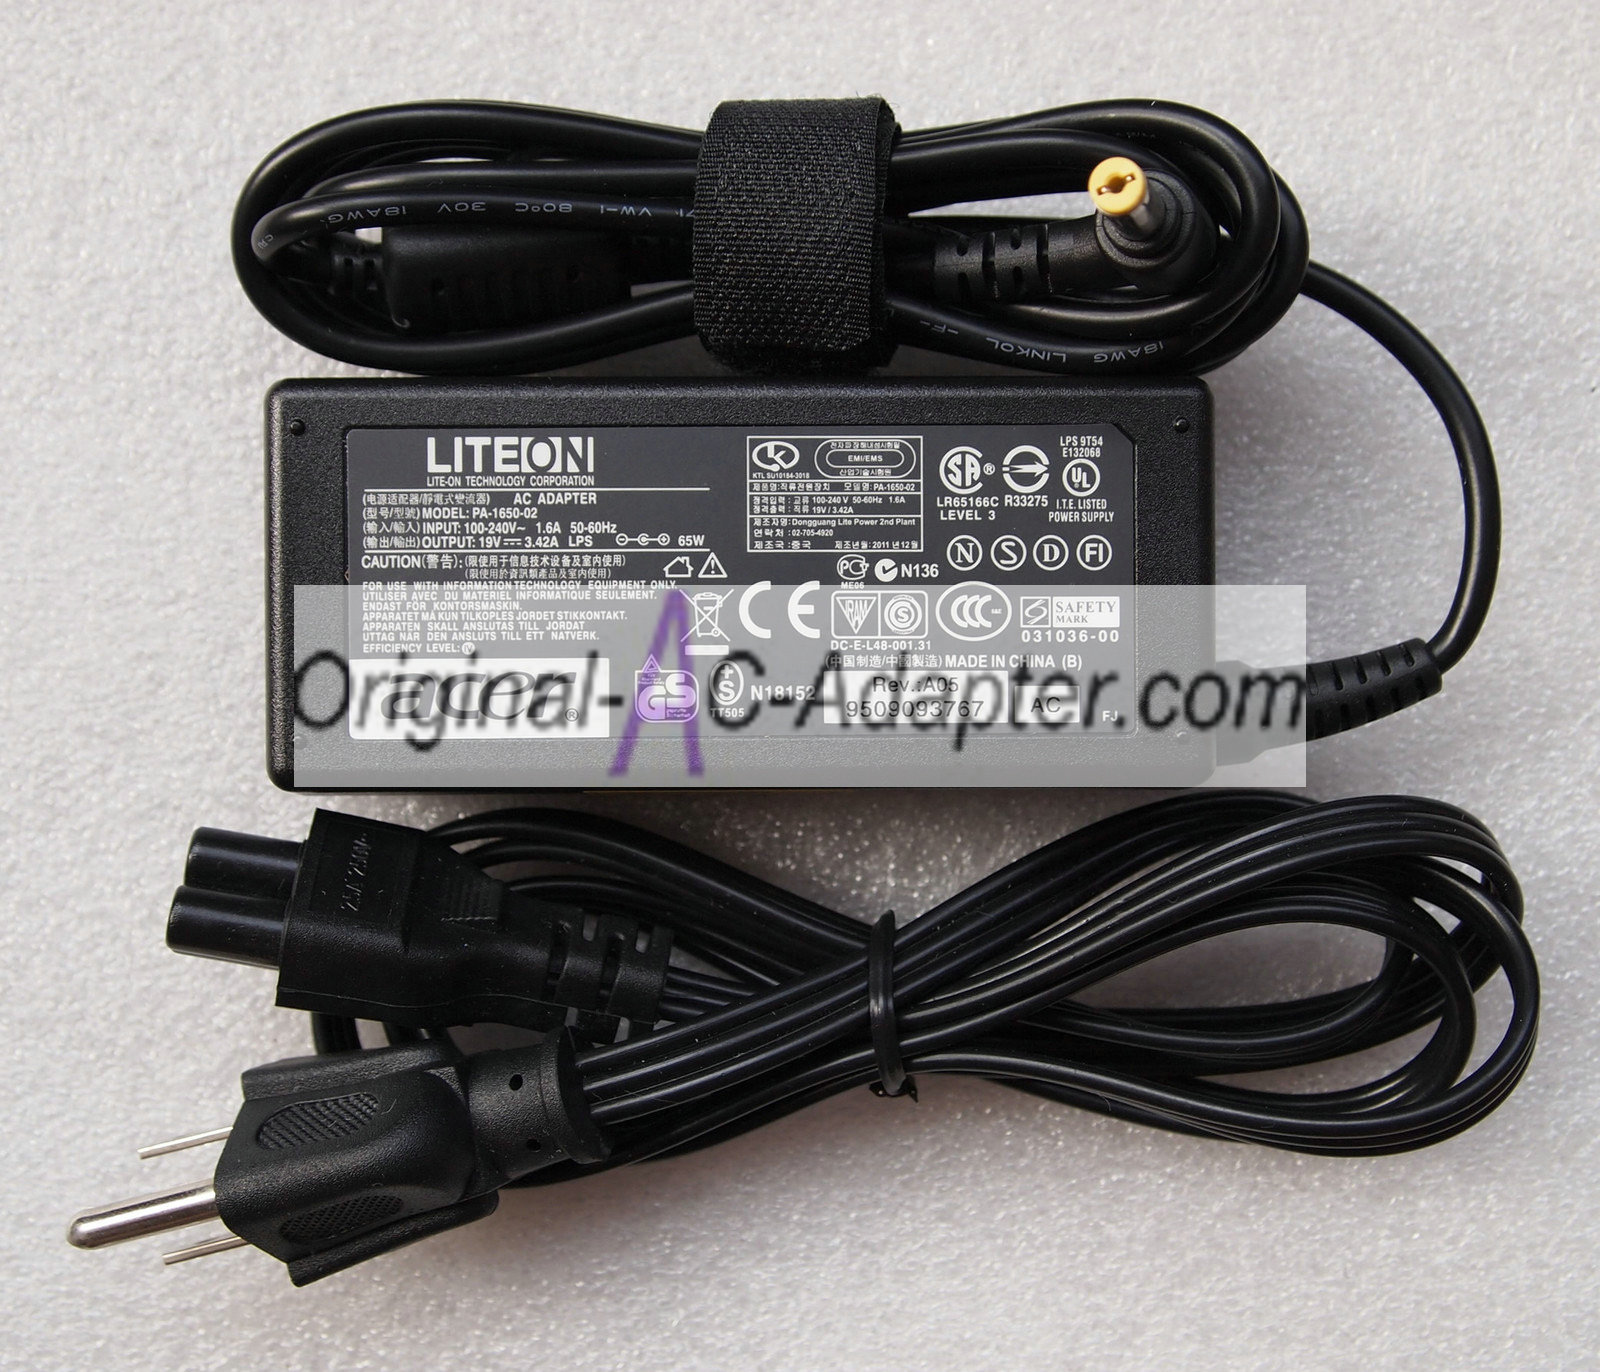 Benq 198713-001 19V 3.42A Power AC Adapter